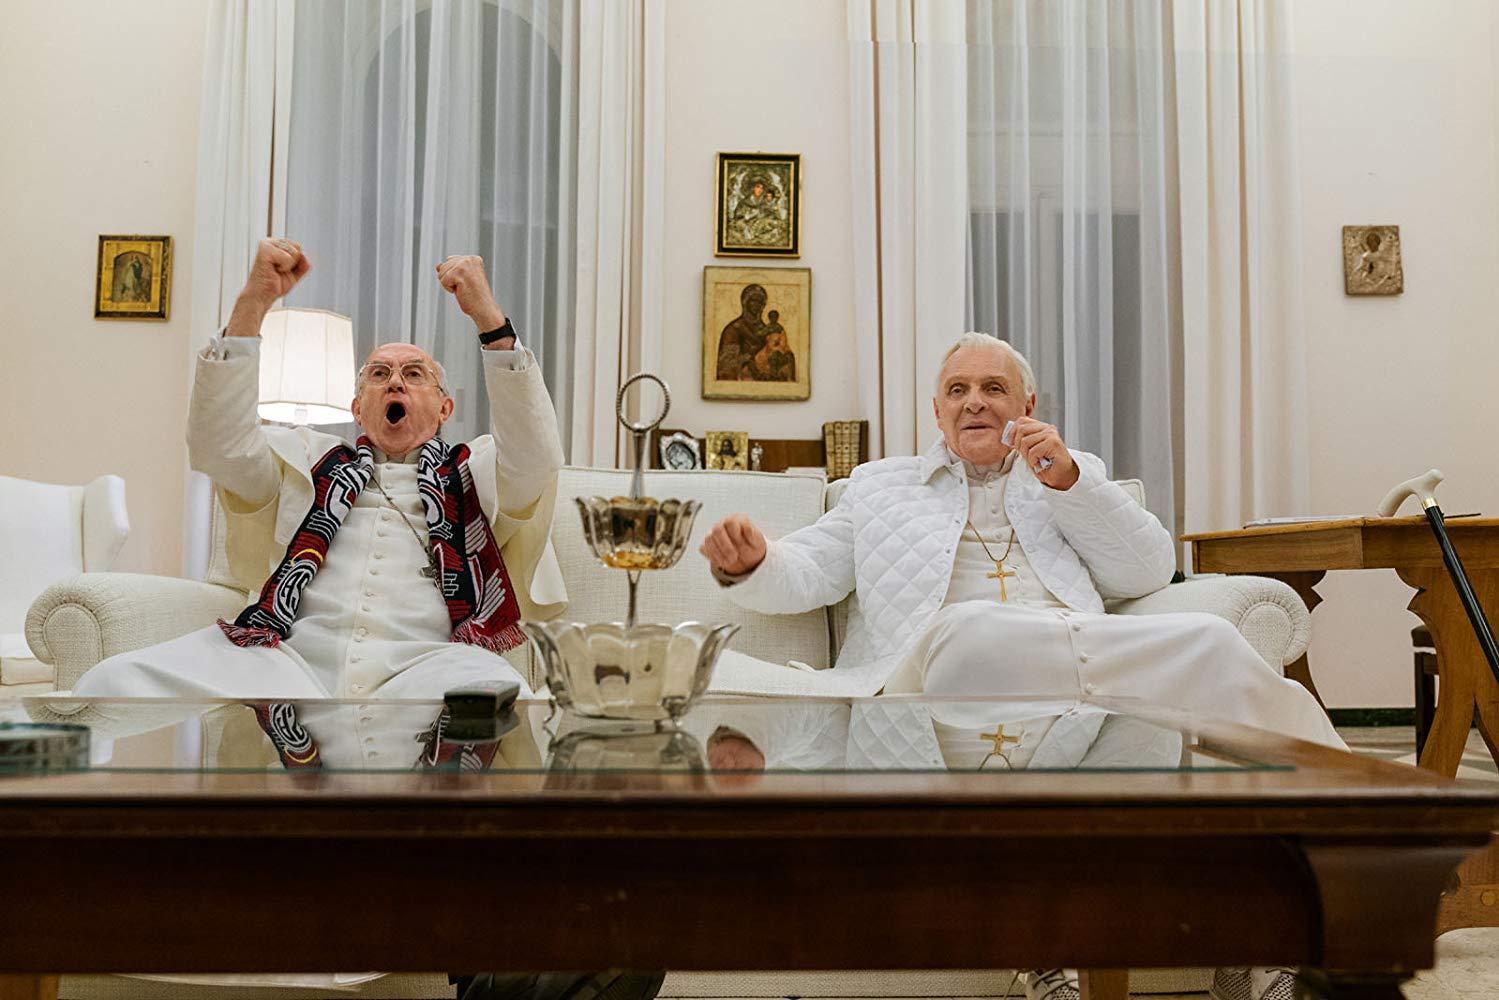 مشاهدة فيلم The Two Popes (2019) مترجم HD اون لاين